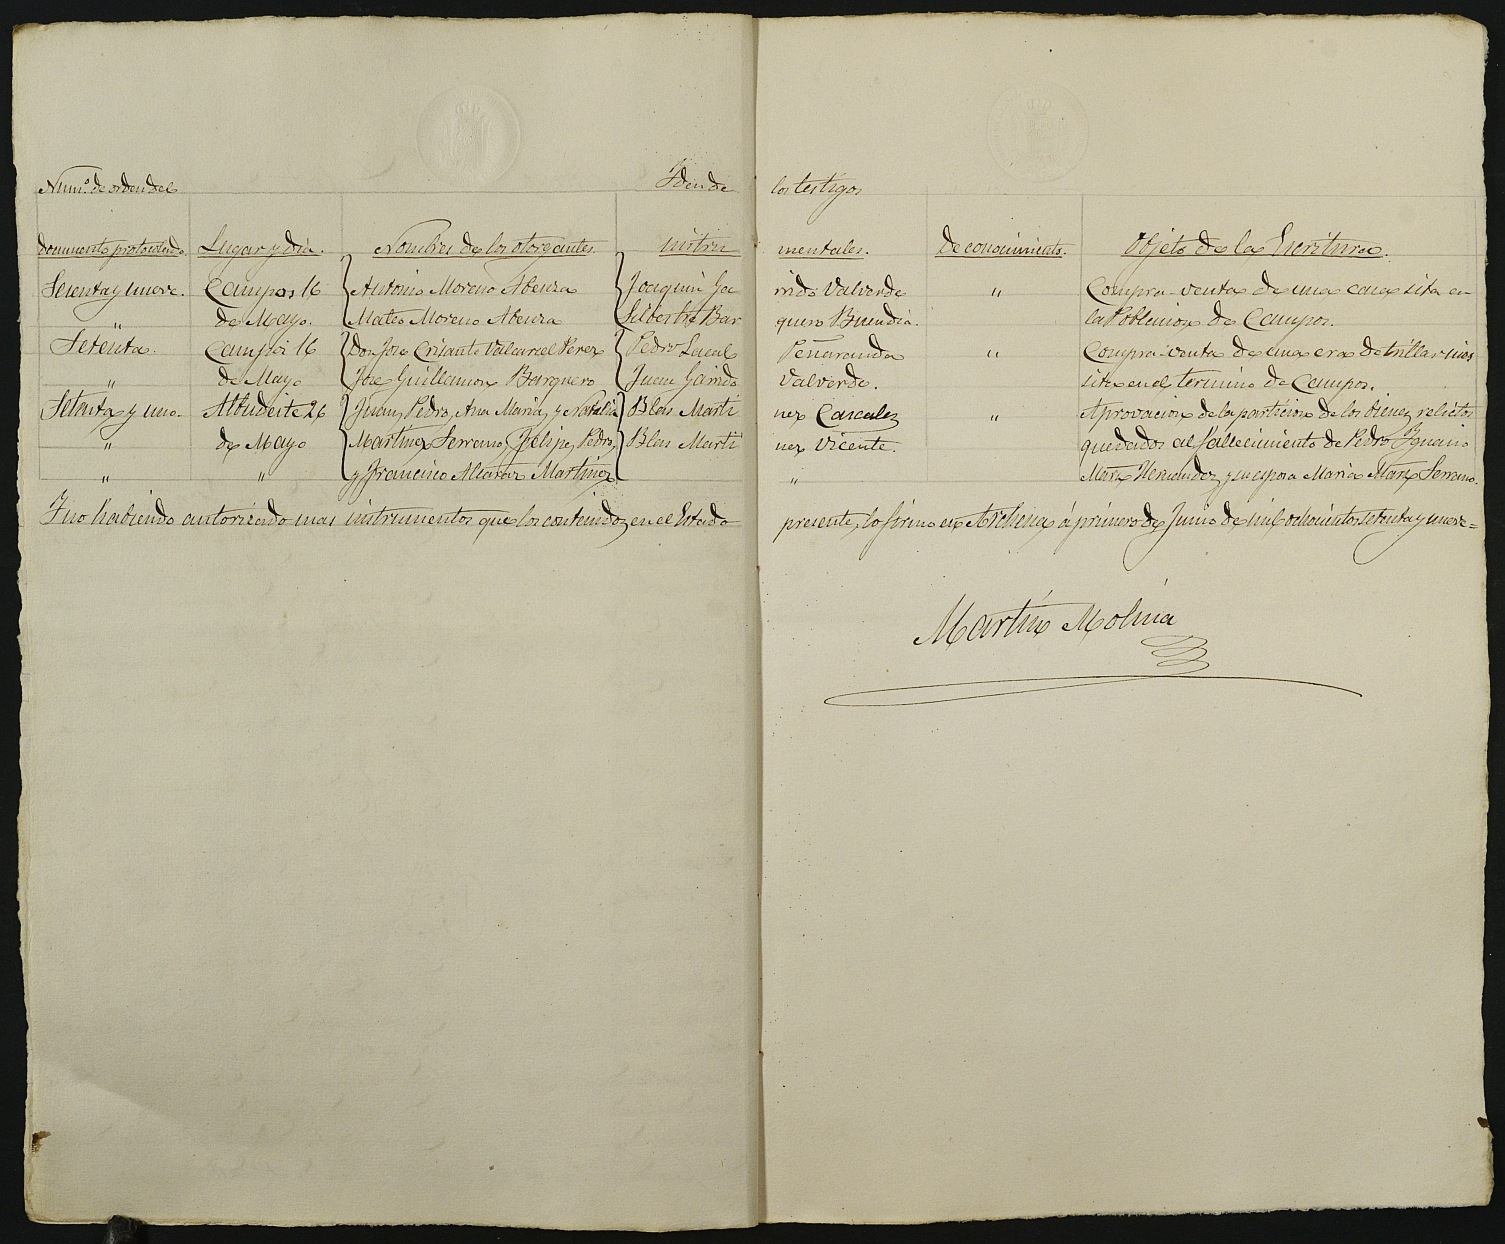 Índices del notario de Archena Martin Molina Valero del año 1879.